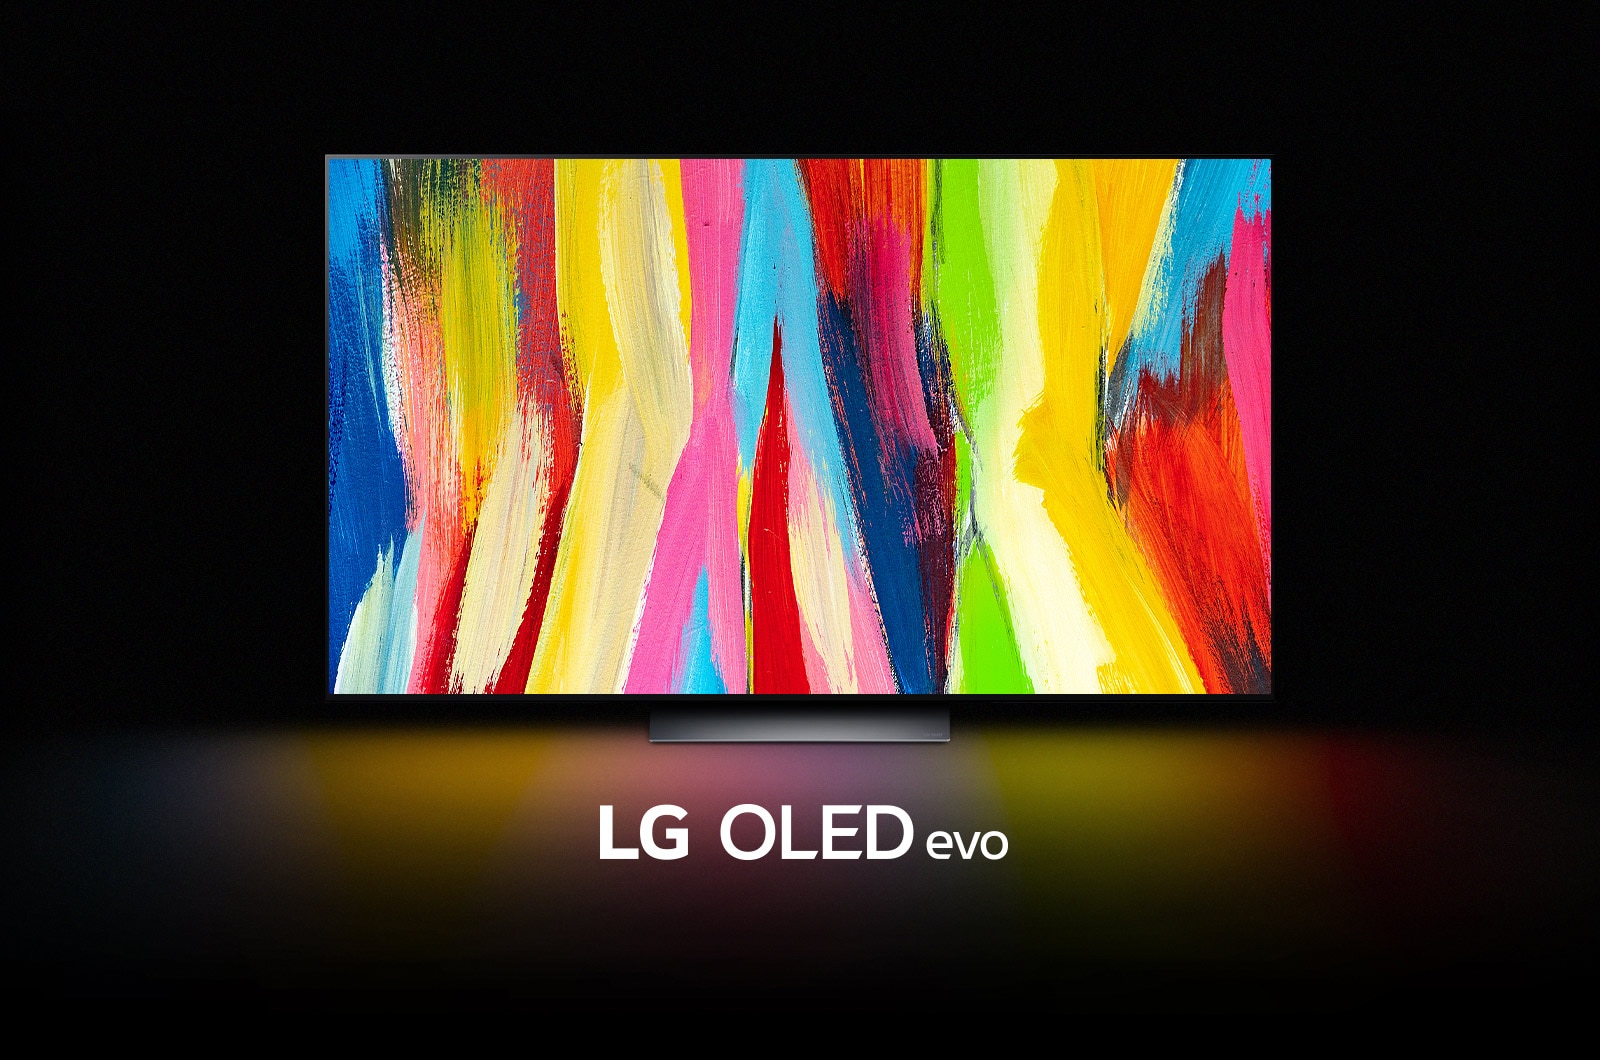 LG OLED C2 знаходиться у темній кімнаті з абстрактними барвистими ілюстраціями вертикальних ліній на дисплеї та написом LG OLED evo внизу.